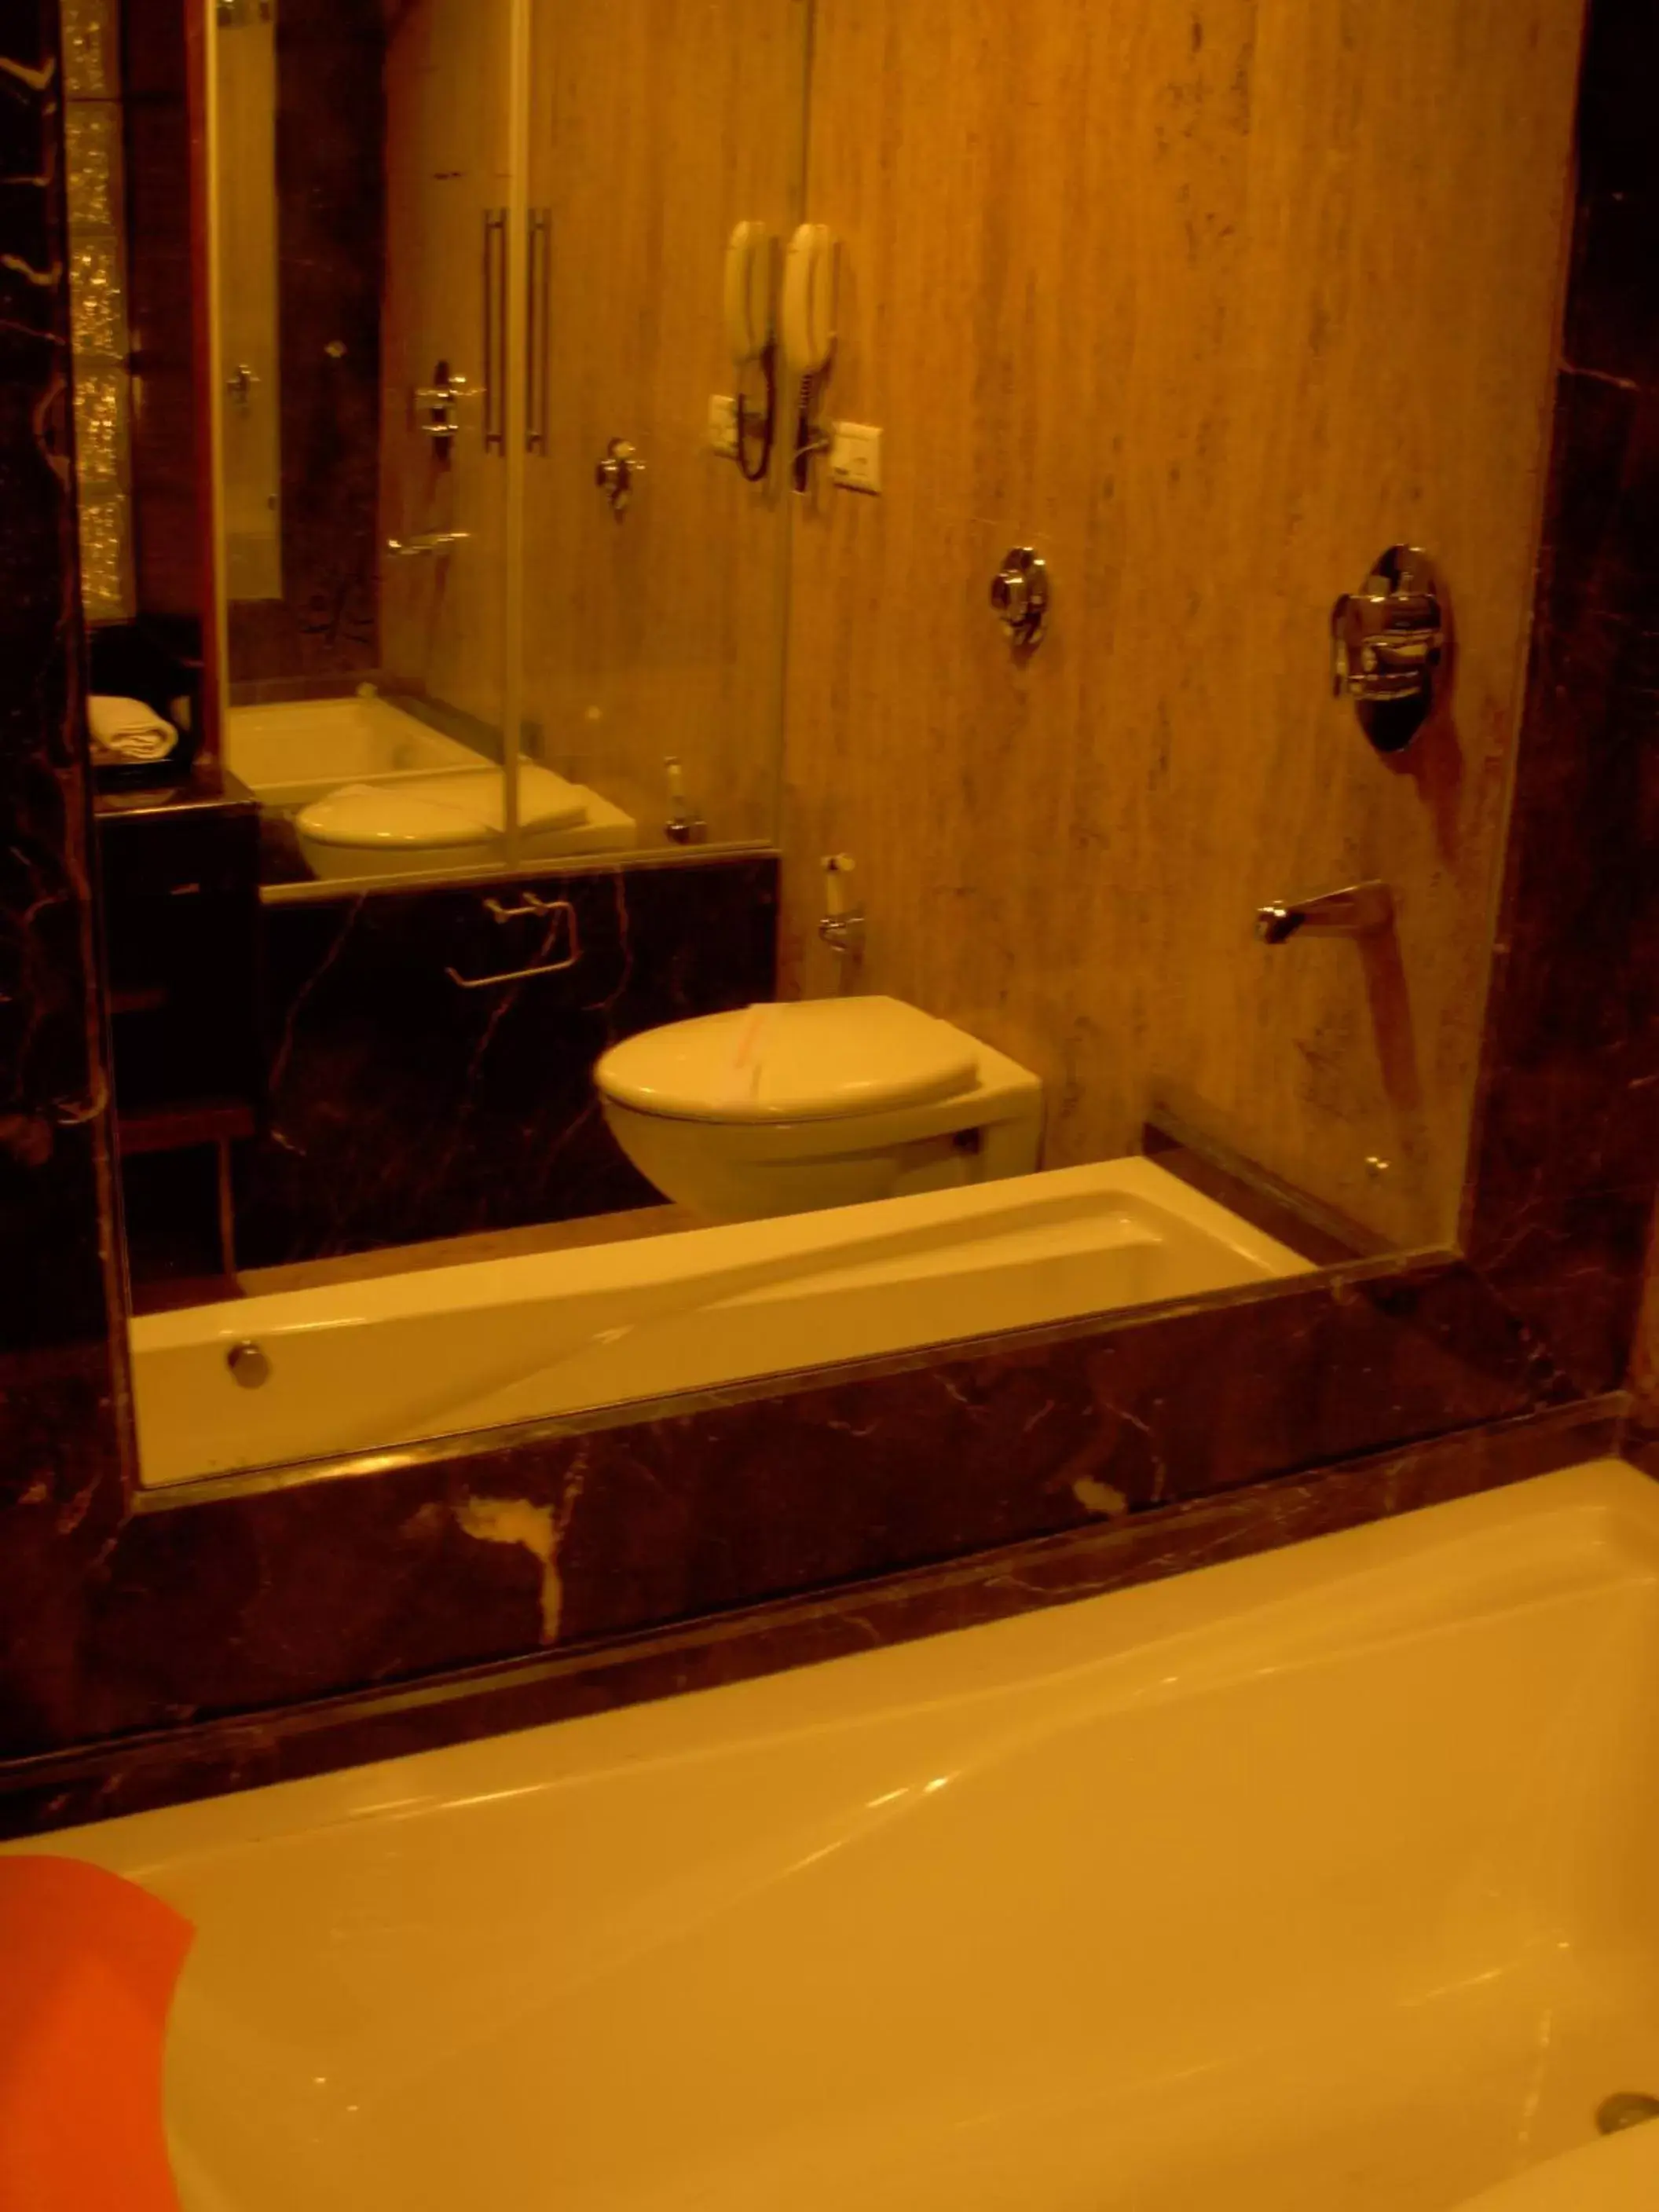 Bathroom in Hotel Aura